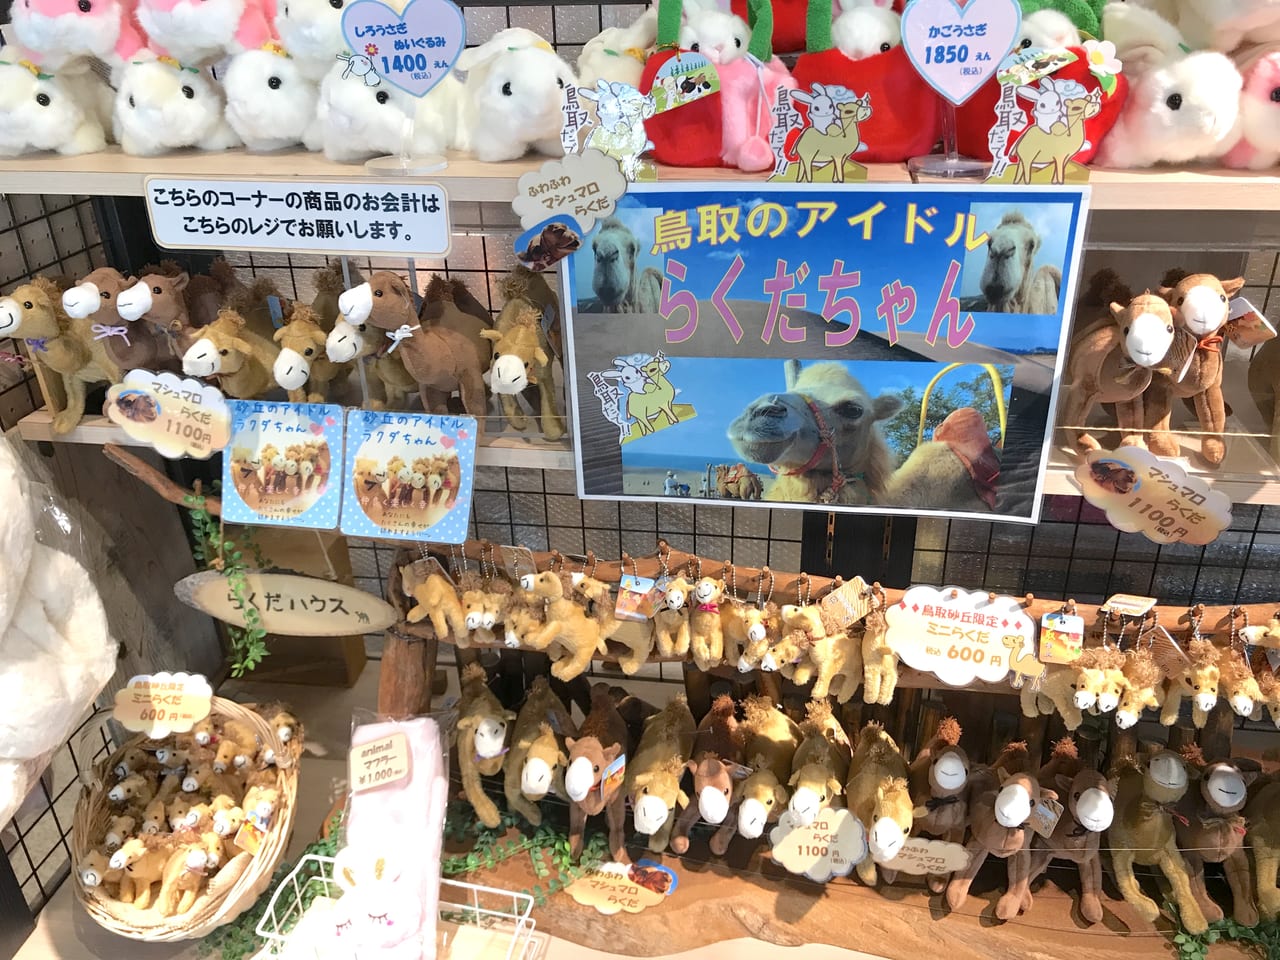 鳥取市 鳥取のアイドル らくだちゃん のライド体験できます お土産もヨロシクね 号外net 鳥取市 東部地域